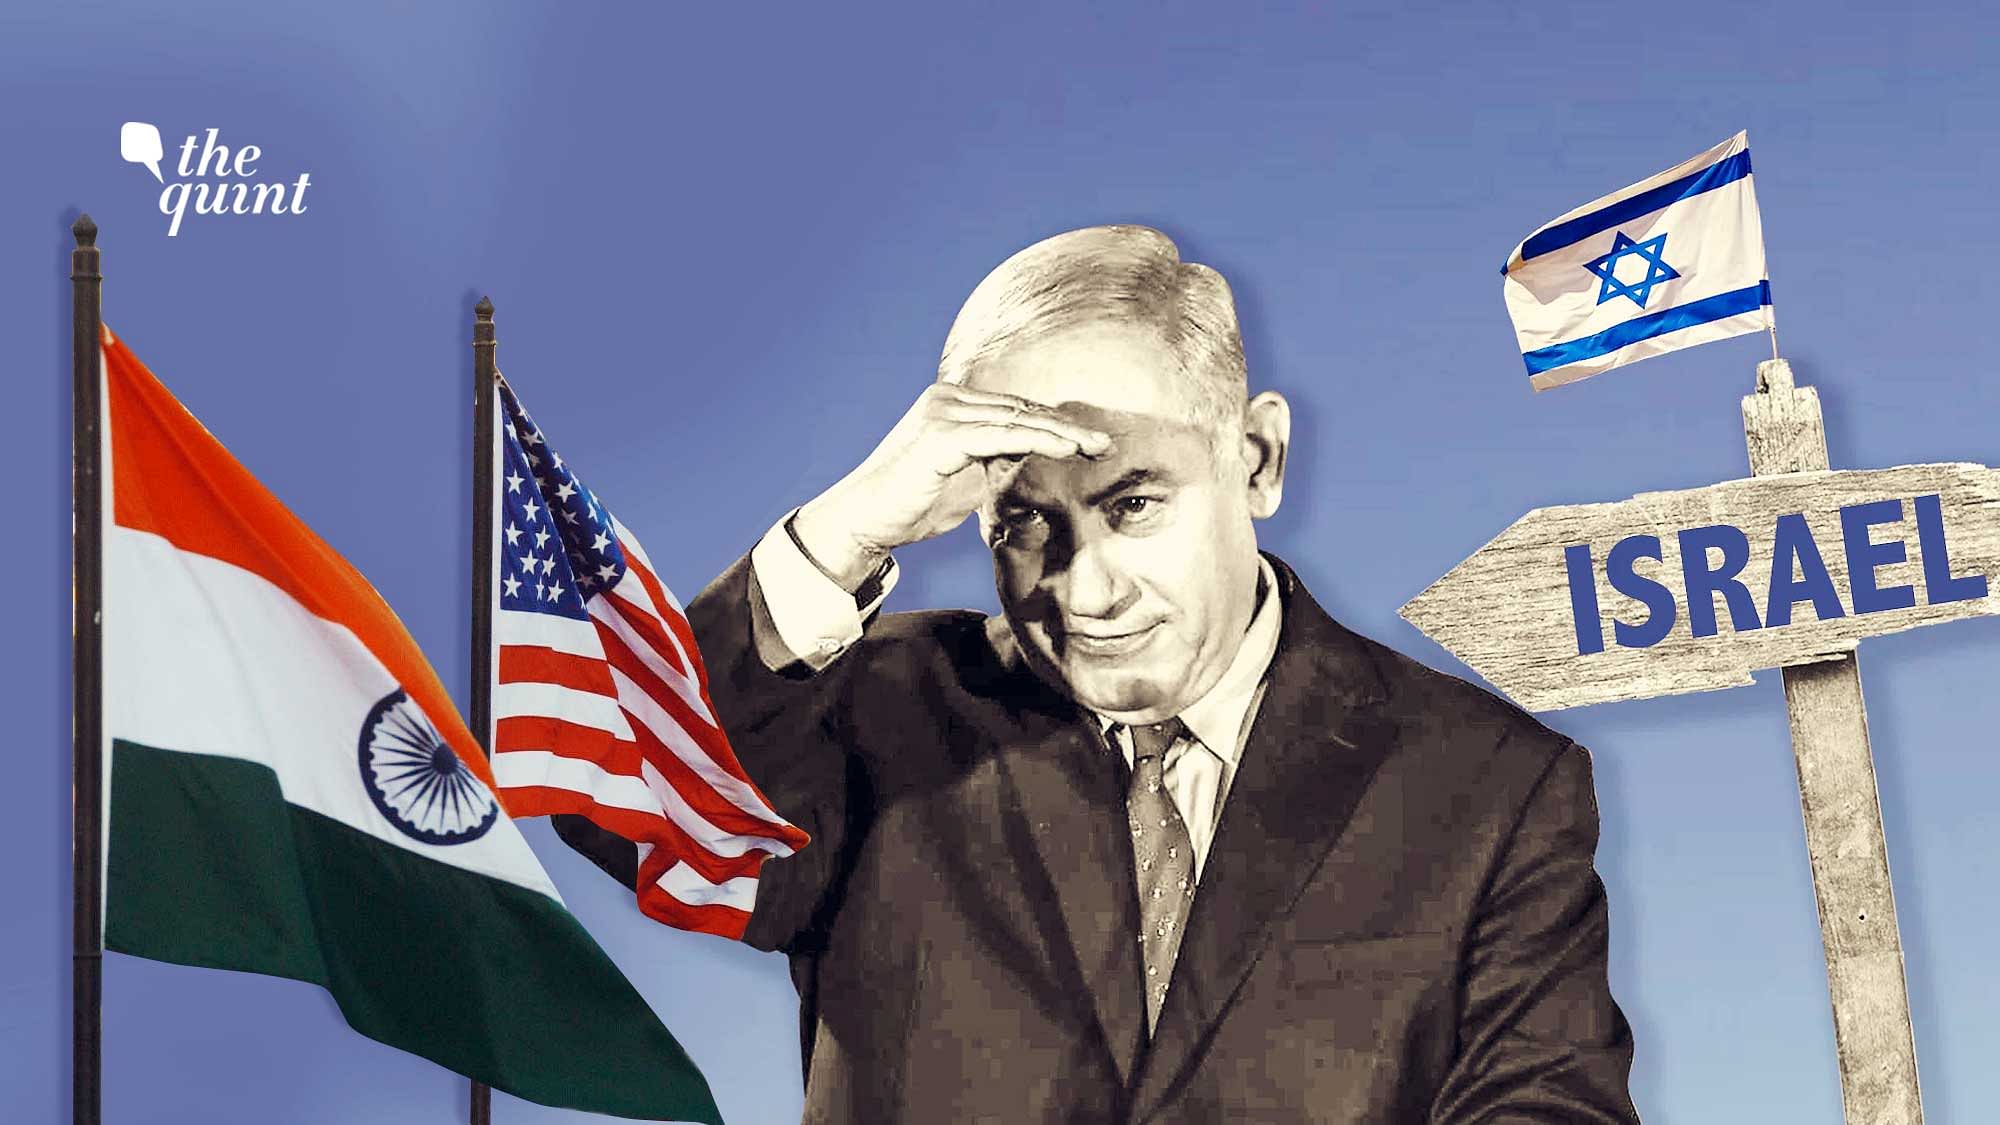 Image of Israel incumbent PM Netanyahu used for representational purposes.&nbsp;